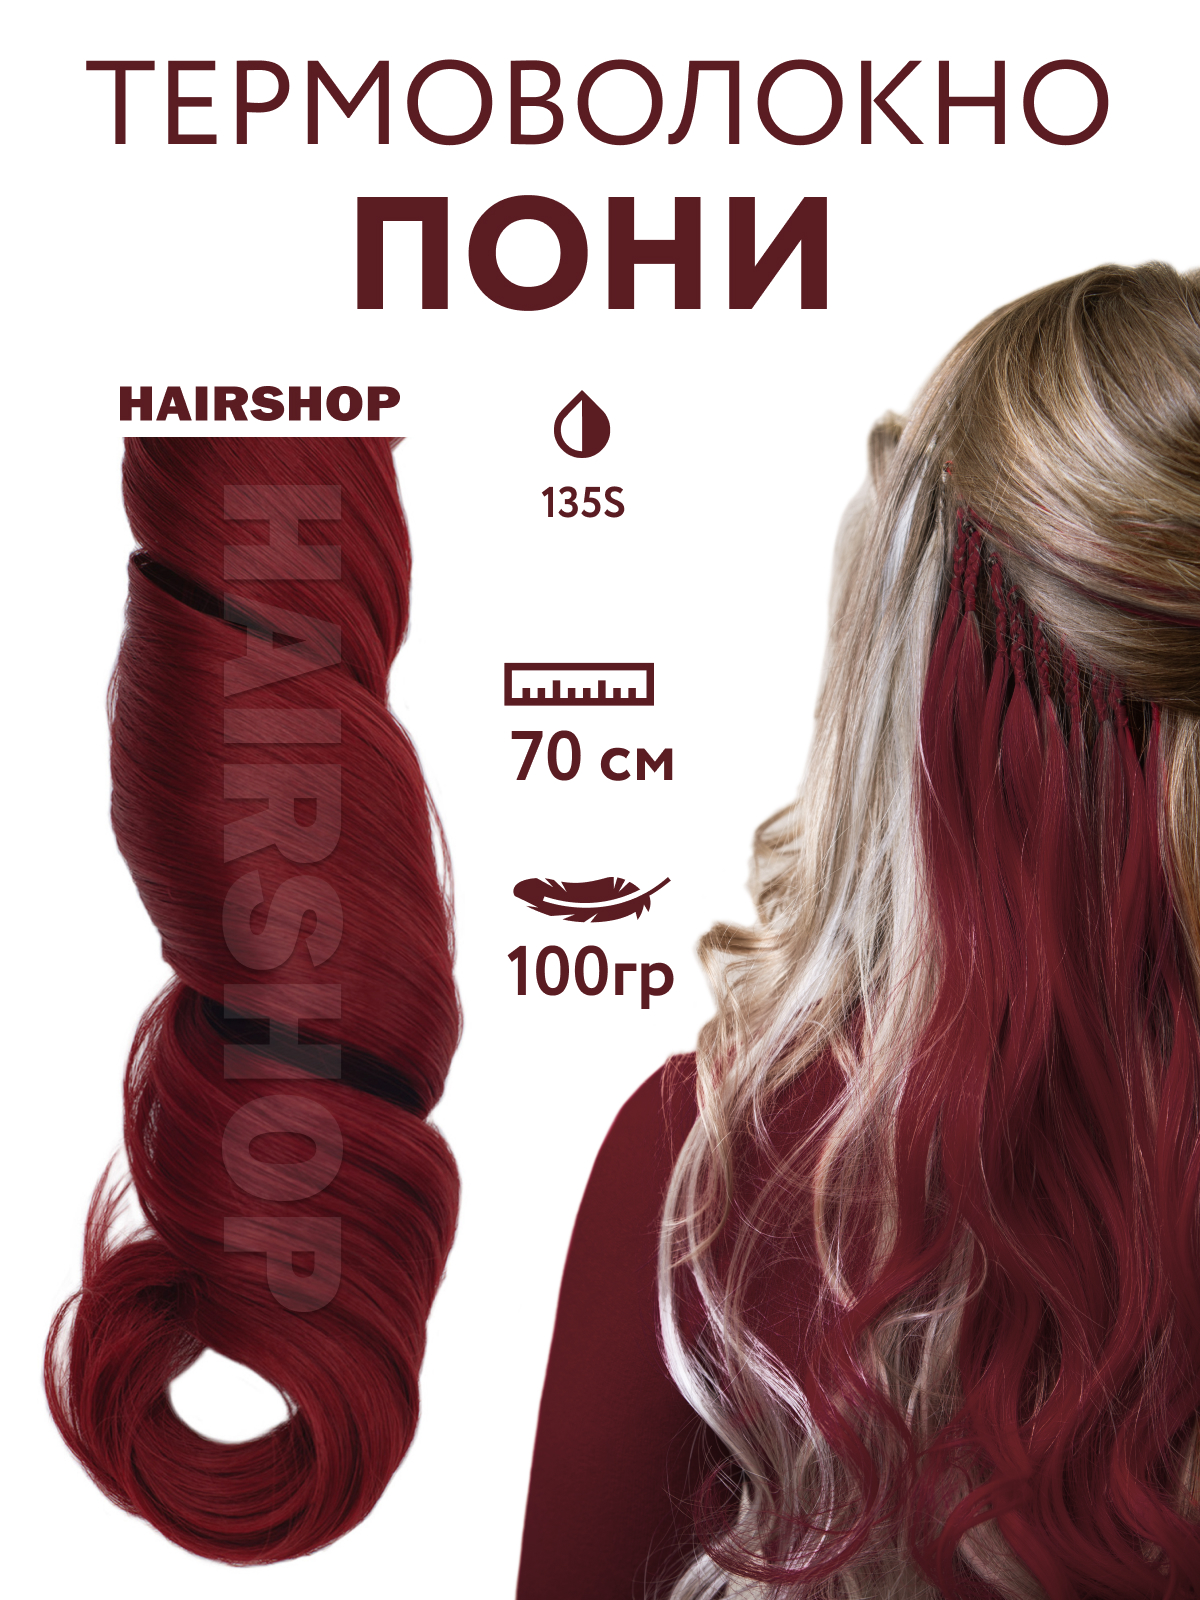 Канекалон Hairshop Пони HairUp для точечного афронаращивания 135-1 Красно-коричневый 1,4м обложка на пенсионное удостоверение коричневый гладкий